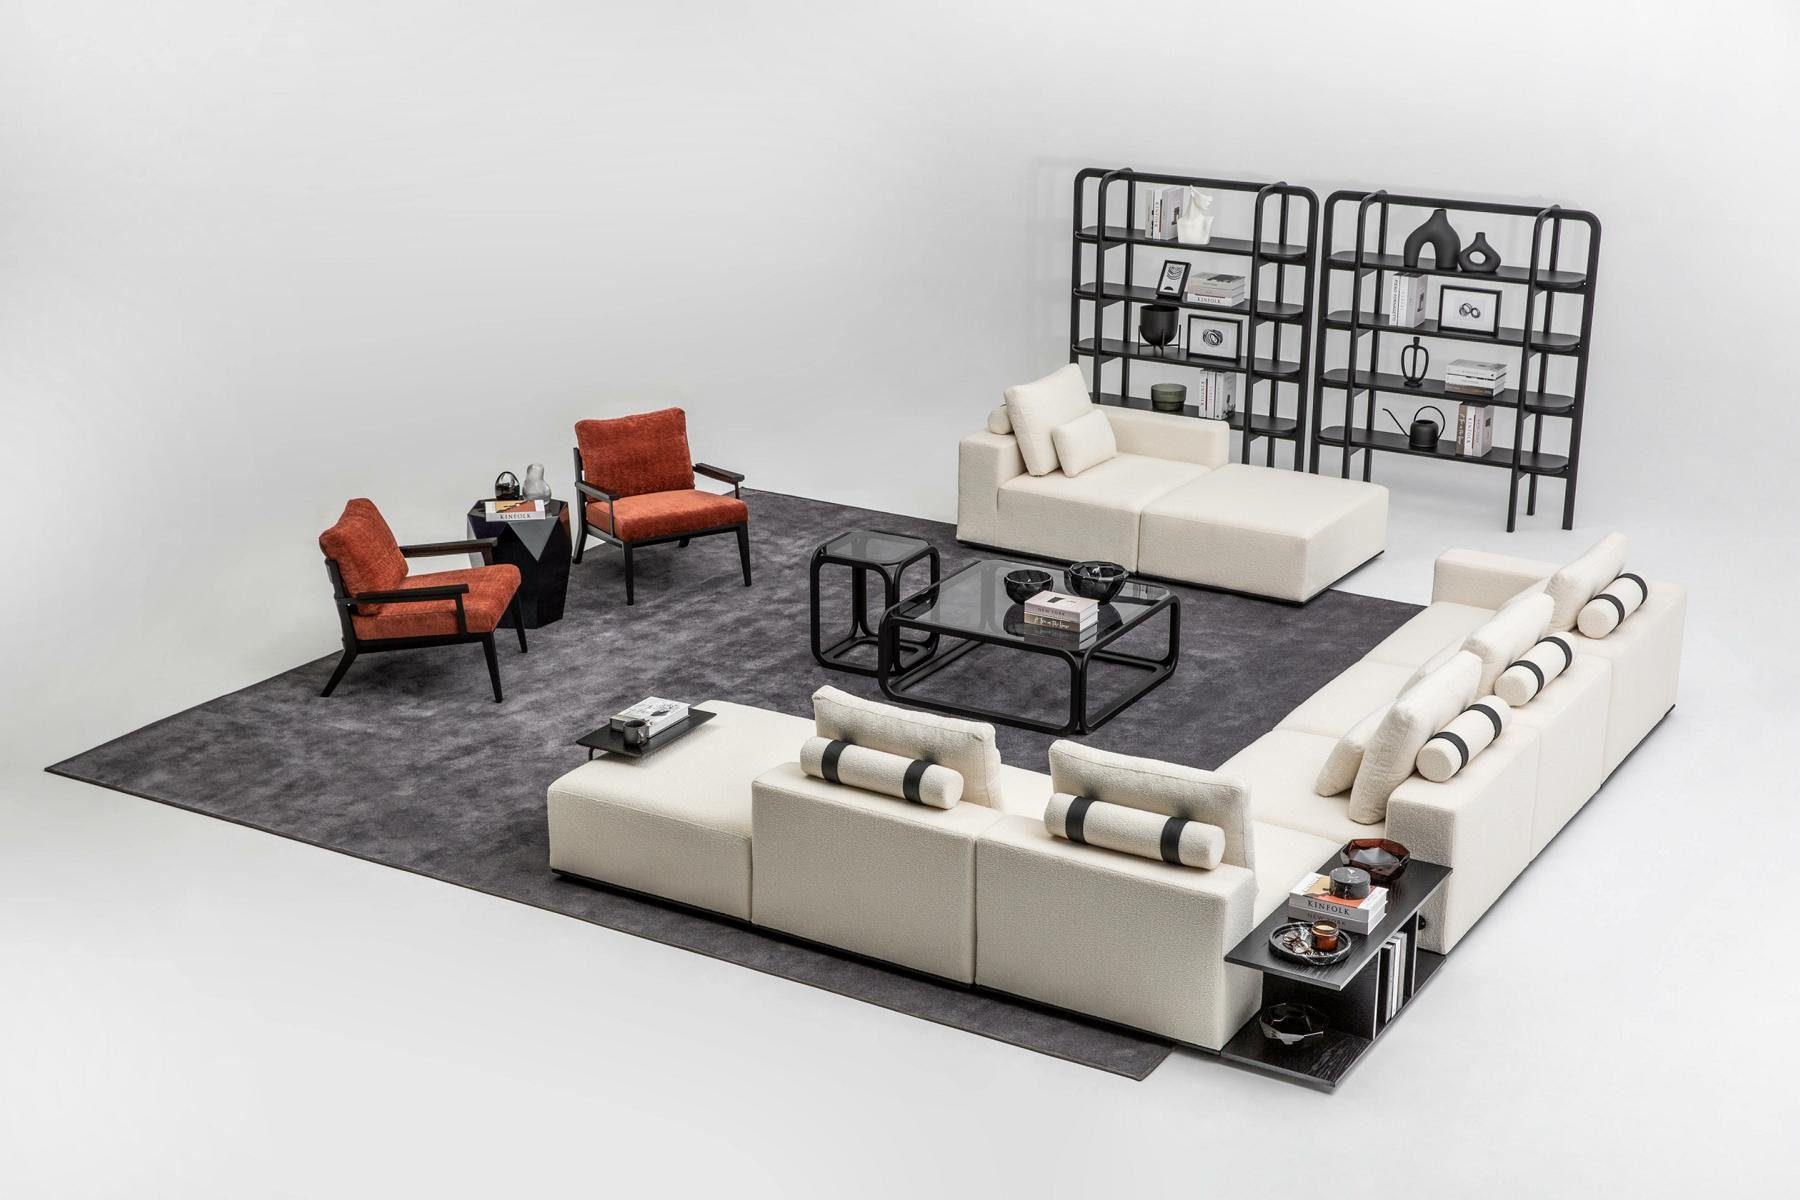 JVmoebel Wohnzimmer-Set Weiße Sofagarnitur L-Form Sofa Ecksofa Sessel Textil Couch Sofas, (Nur Ecksofa L-Form + 3 Sitzer + 2х Sessel), Made in Europe